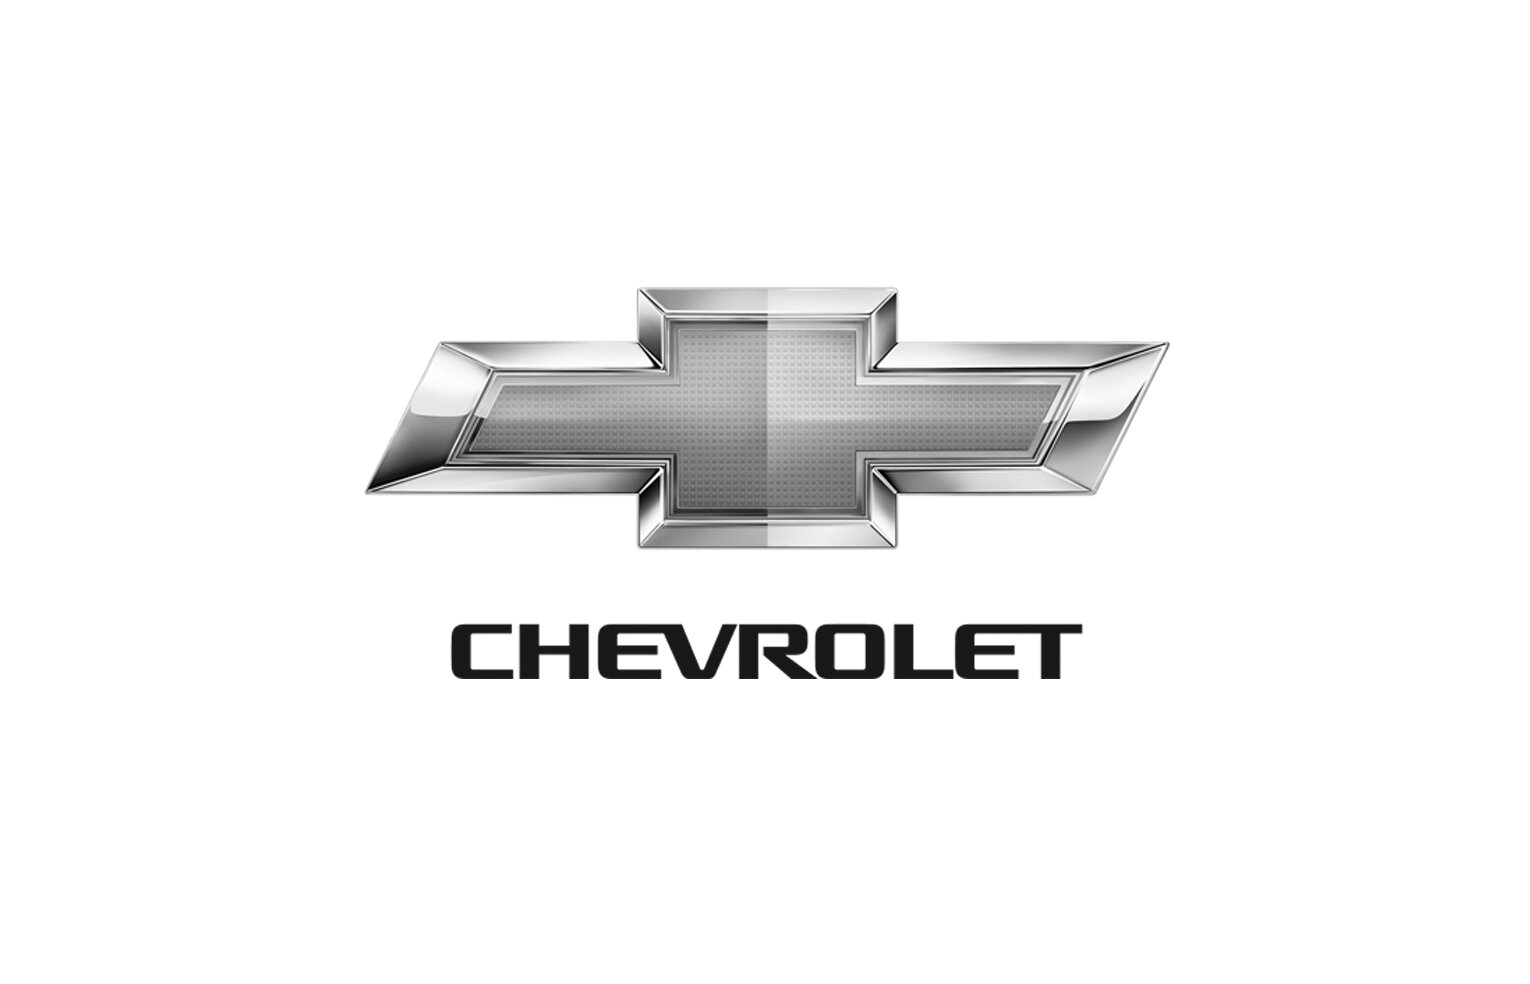 Chevrolet.jpg